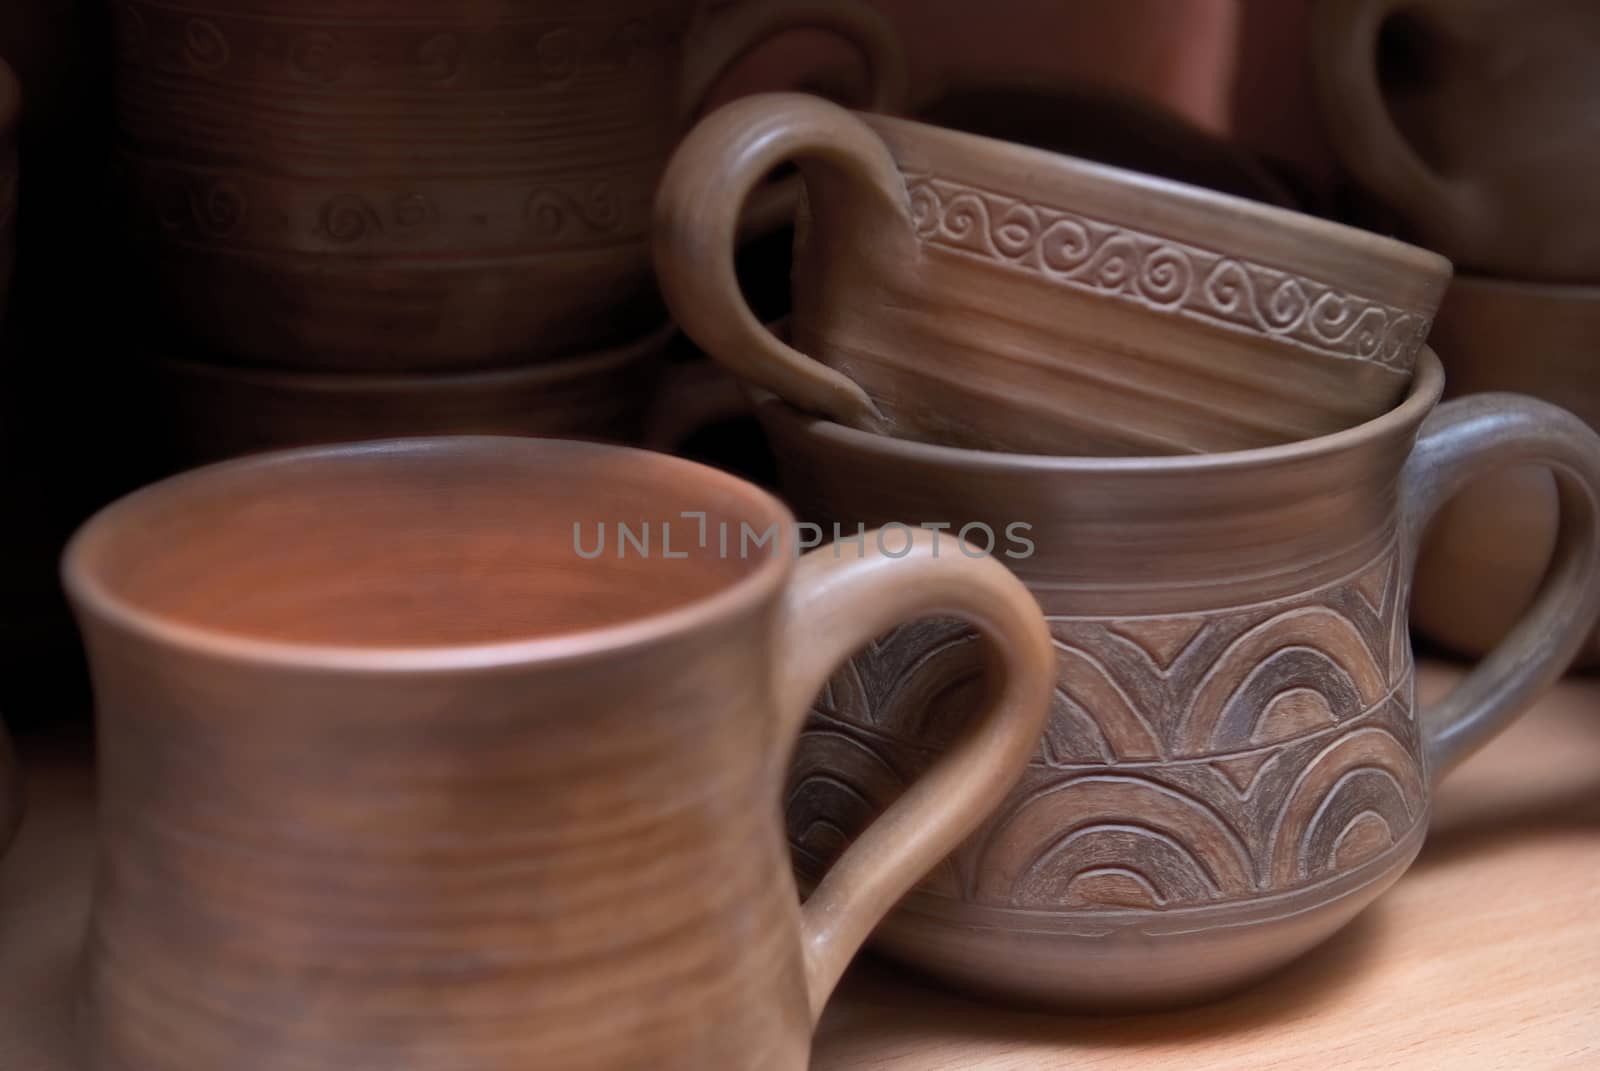 Many handmade old clay pots on the shelf.